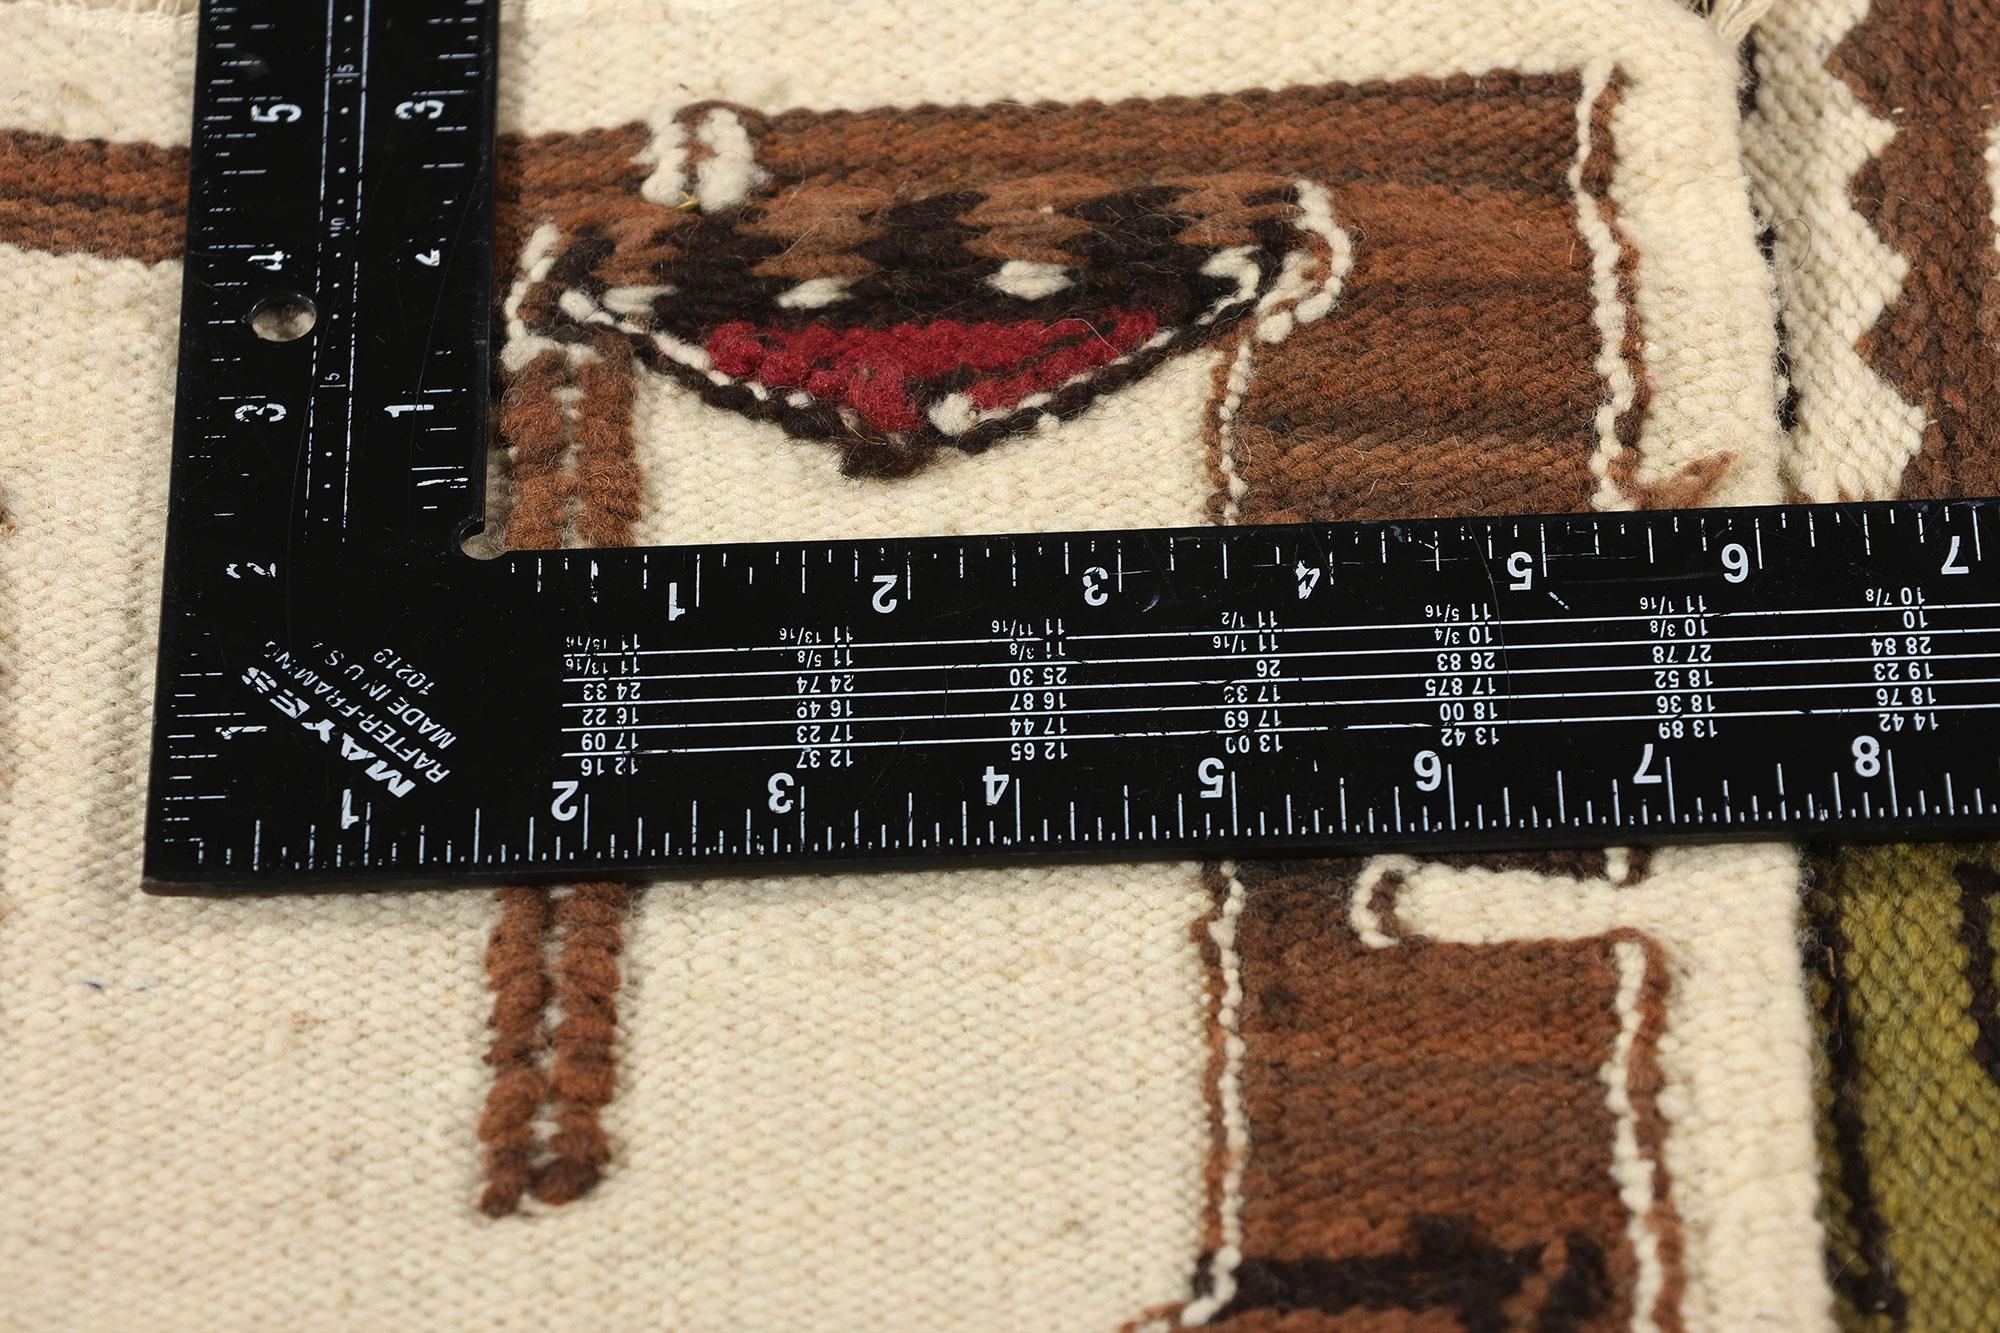 78757 Vintage Peruvian Deity Pictorial Kilim Rug, 02'00 x 03'10. Les tapis kilim picturaux péruviens d'Amérique du Sud sont un type spécifique d'art textile originaire du Pérou qui représente des divinités et des figures spirituelles de la